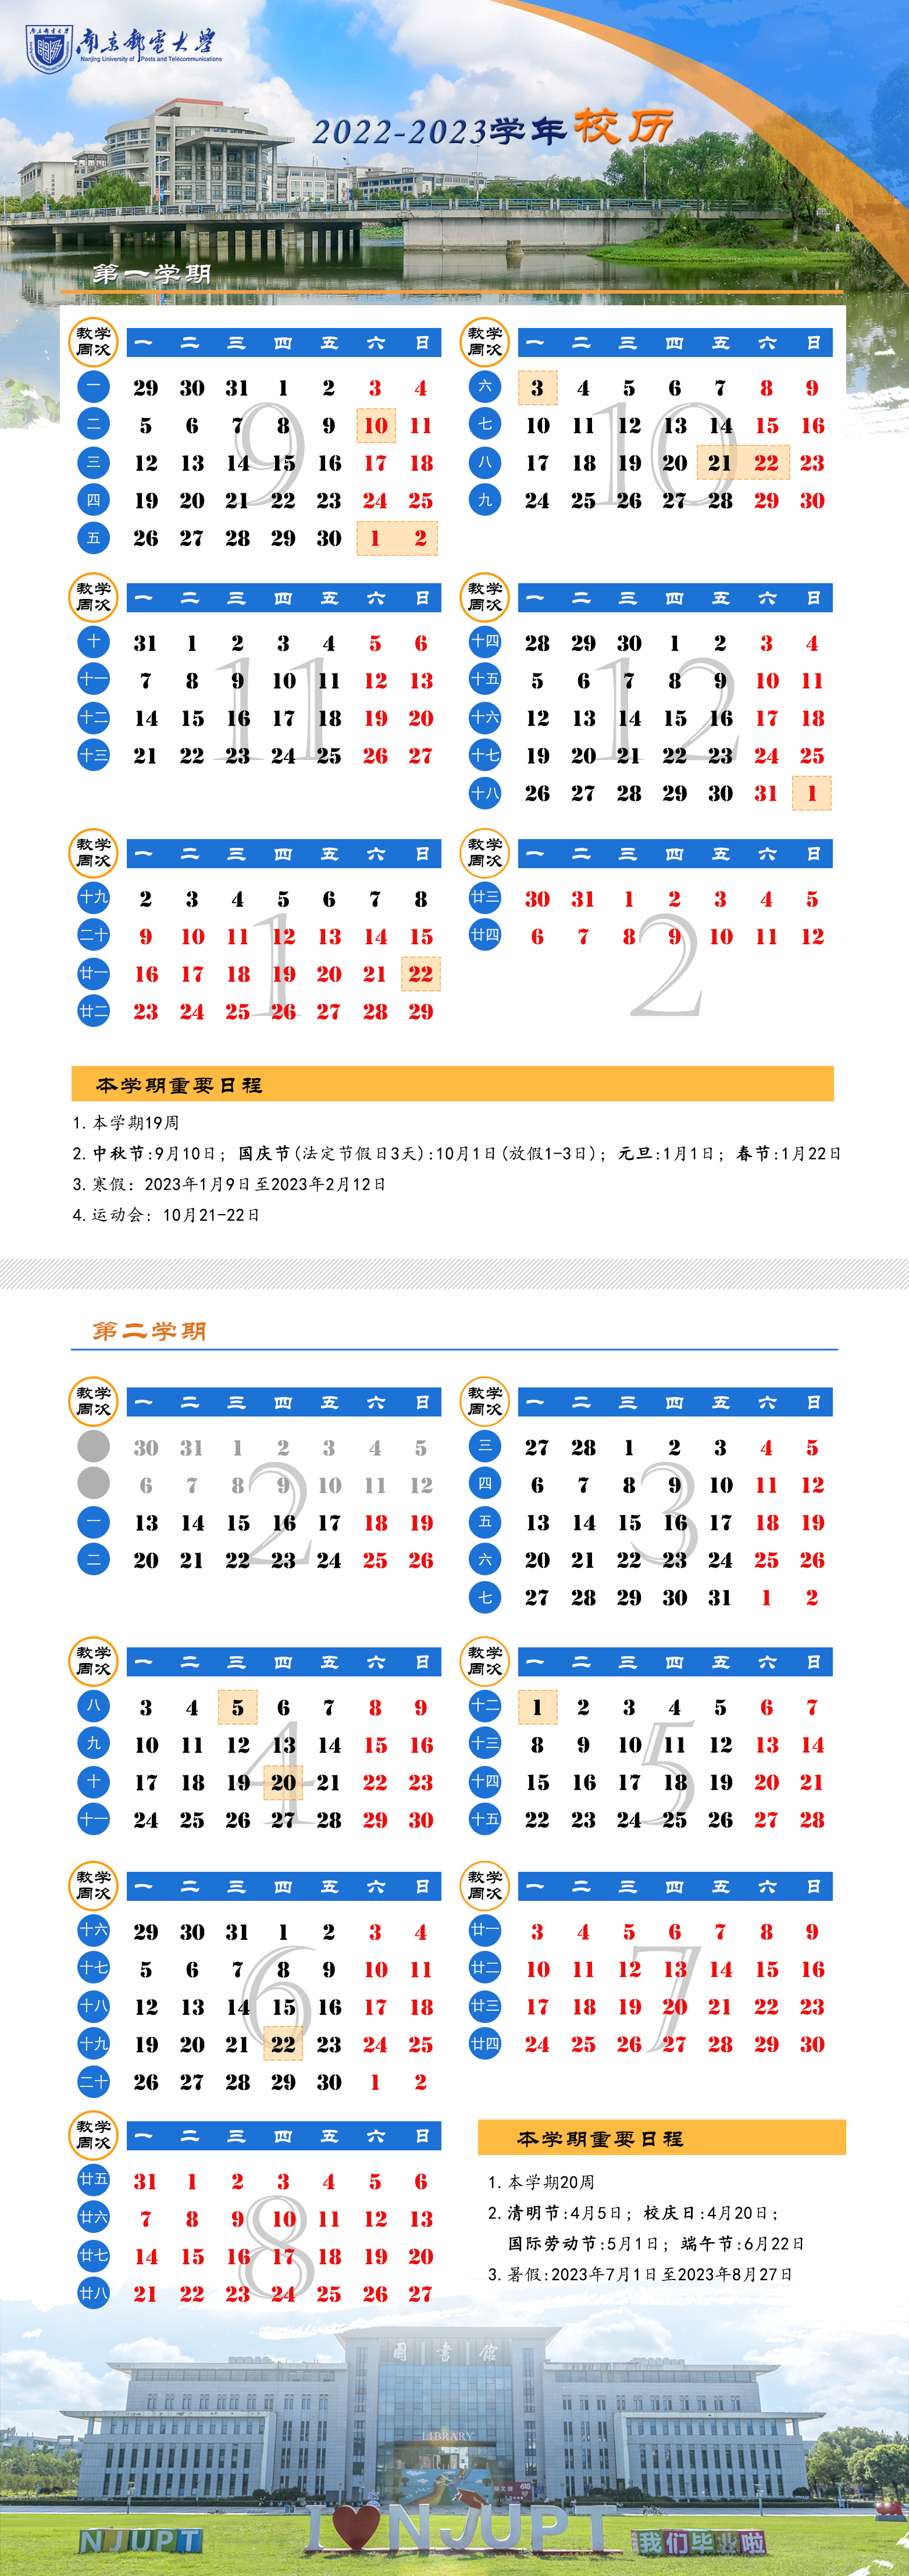 2023南京邮电大学寒假开始和结束时间 什么时候放寒假